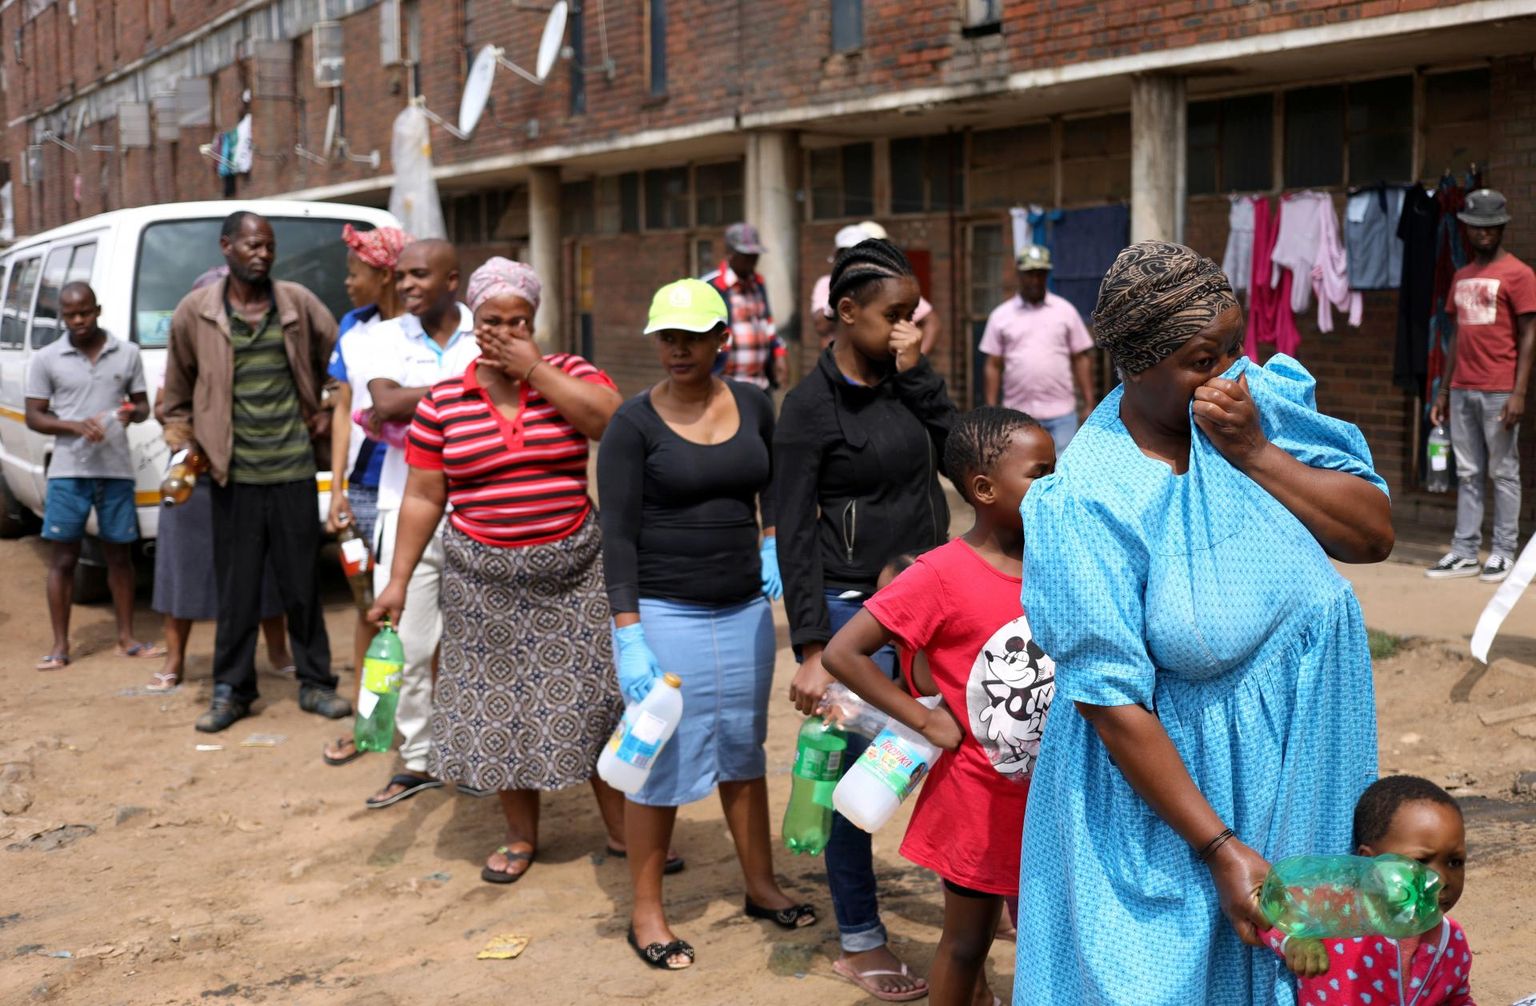 Nägu rõivastega kaetud ja tühjad plastpudelid käes, ootavad Lõuna-Aafrika Vabariigi linna Alexandra elanikud järjekorras, et tervishoiutöötajad neile desinfektsioonivahendeid annaksid. 